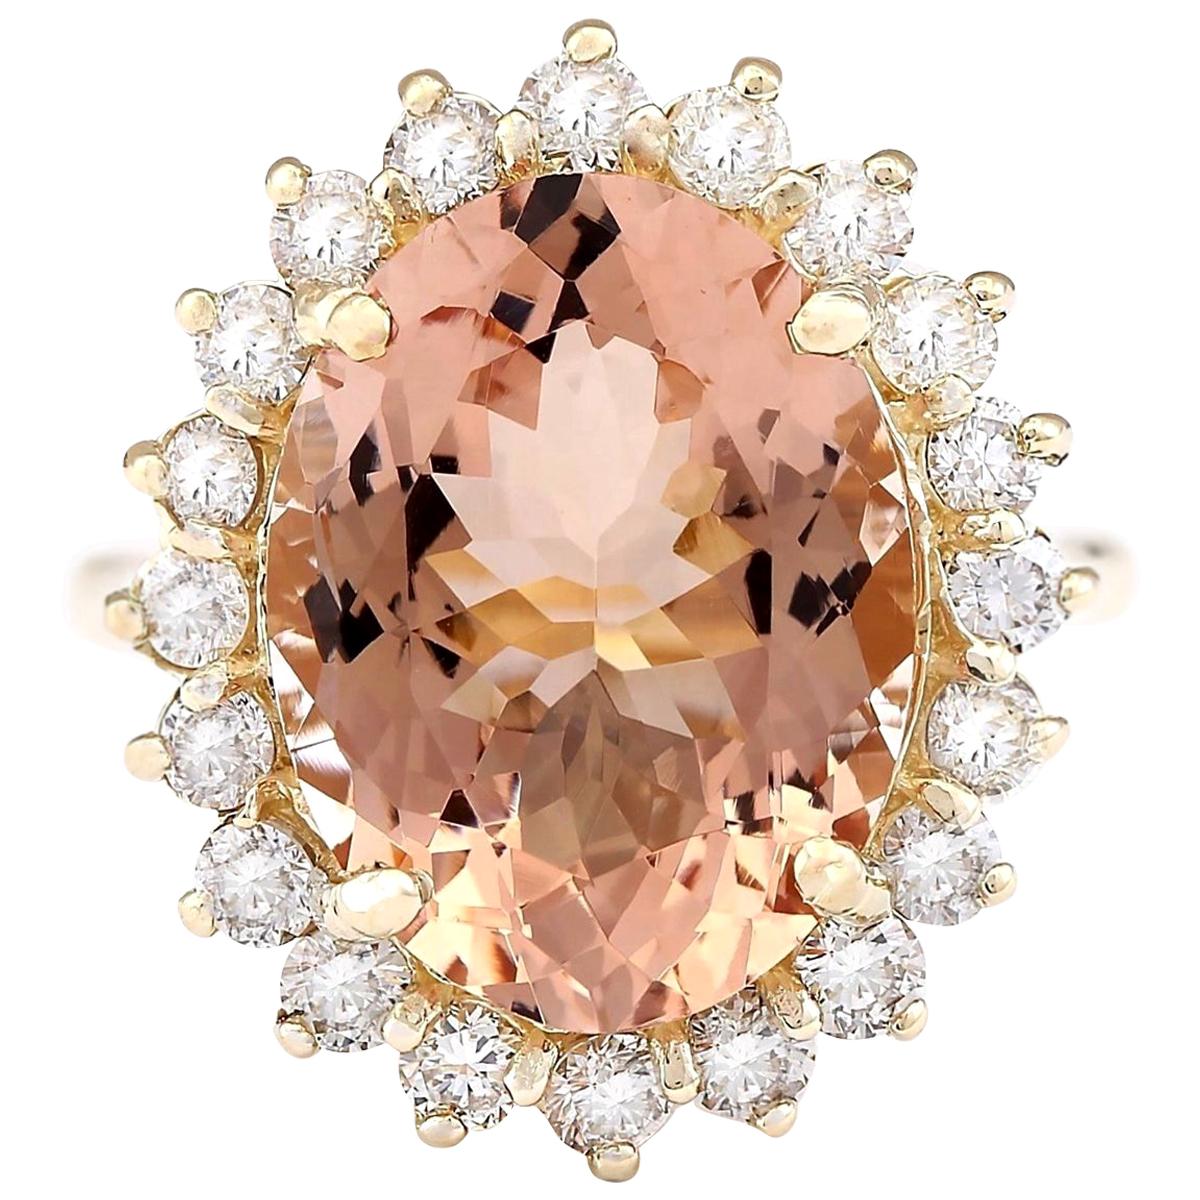 Morganit-Diamantring aus 14 Karat Gelbgold 